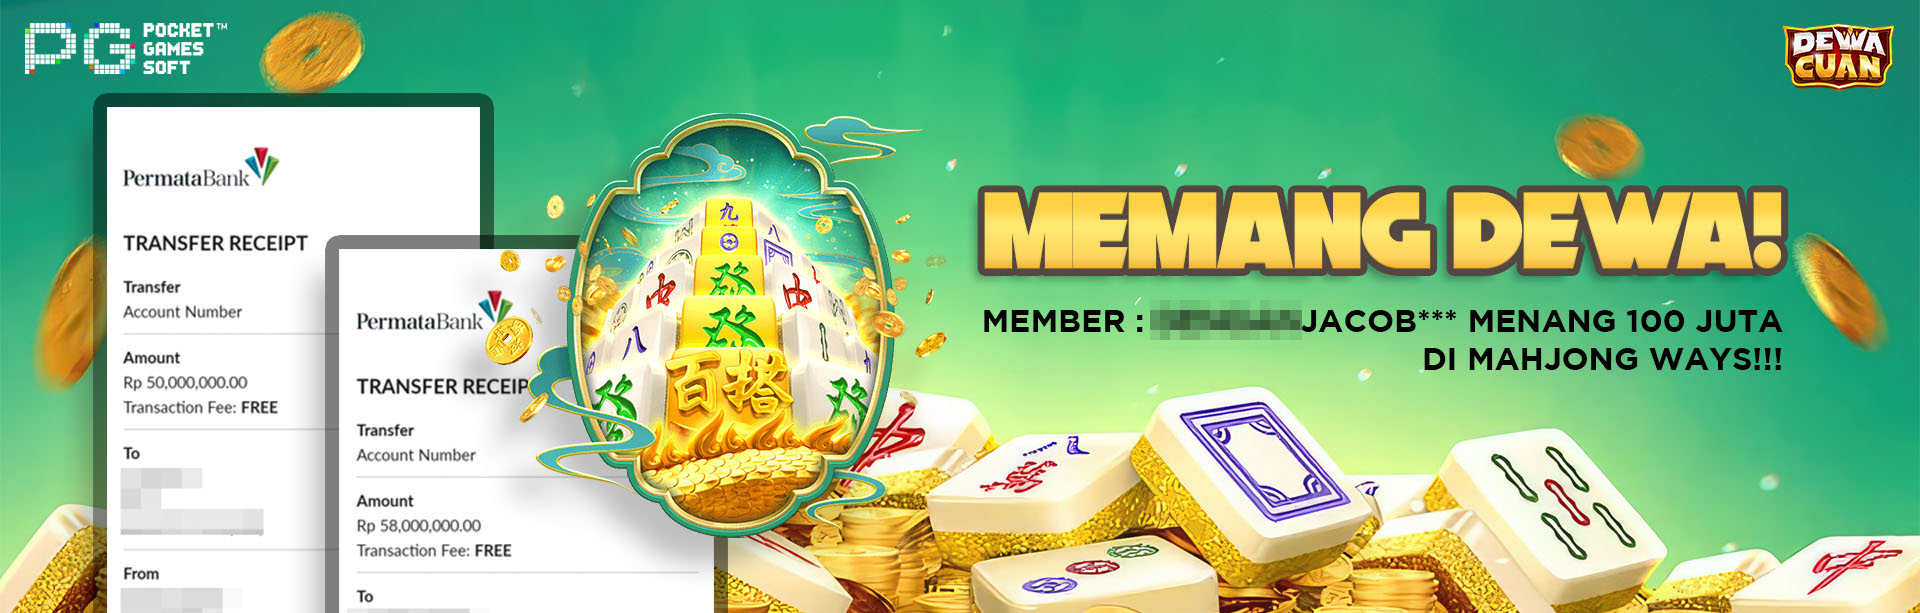 Member JP mahjong ways di Dewacuan